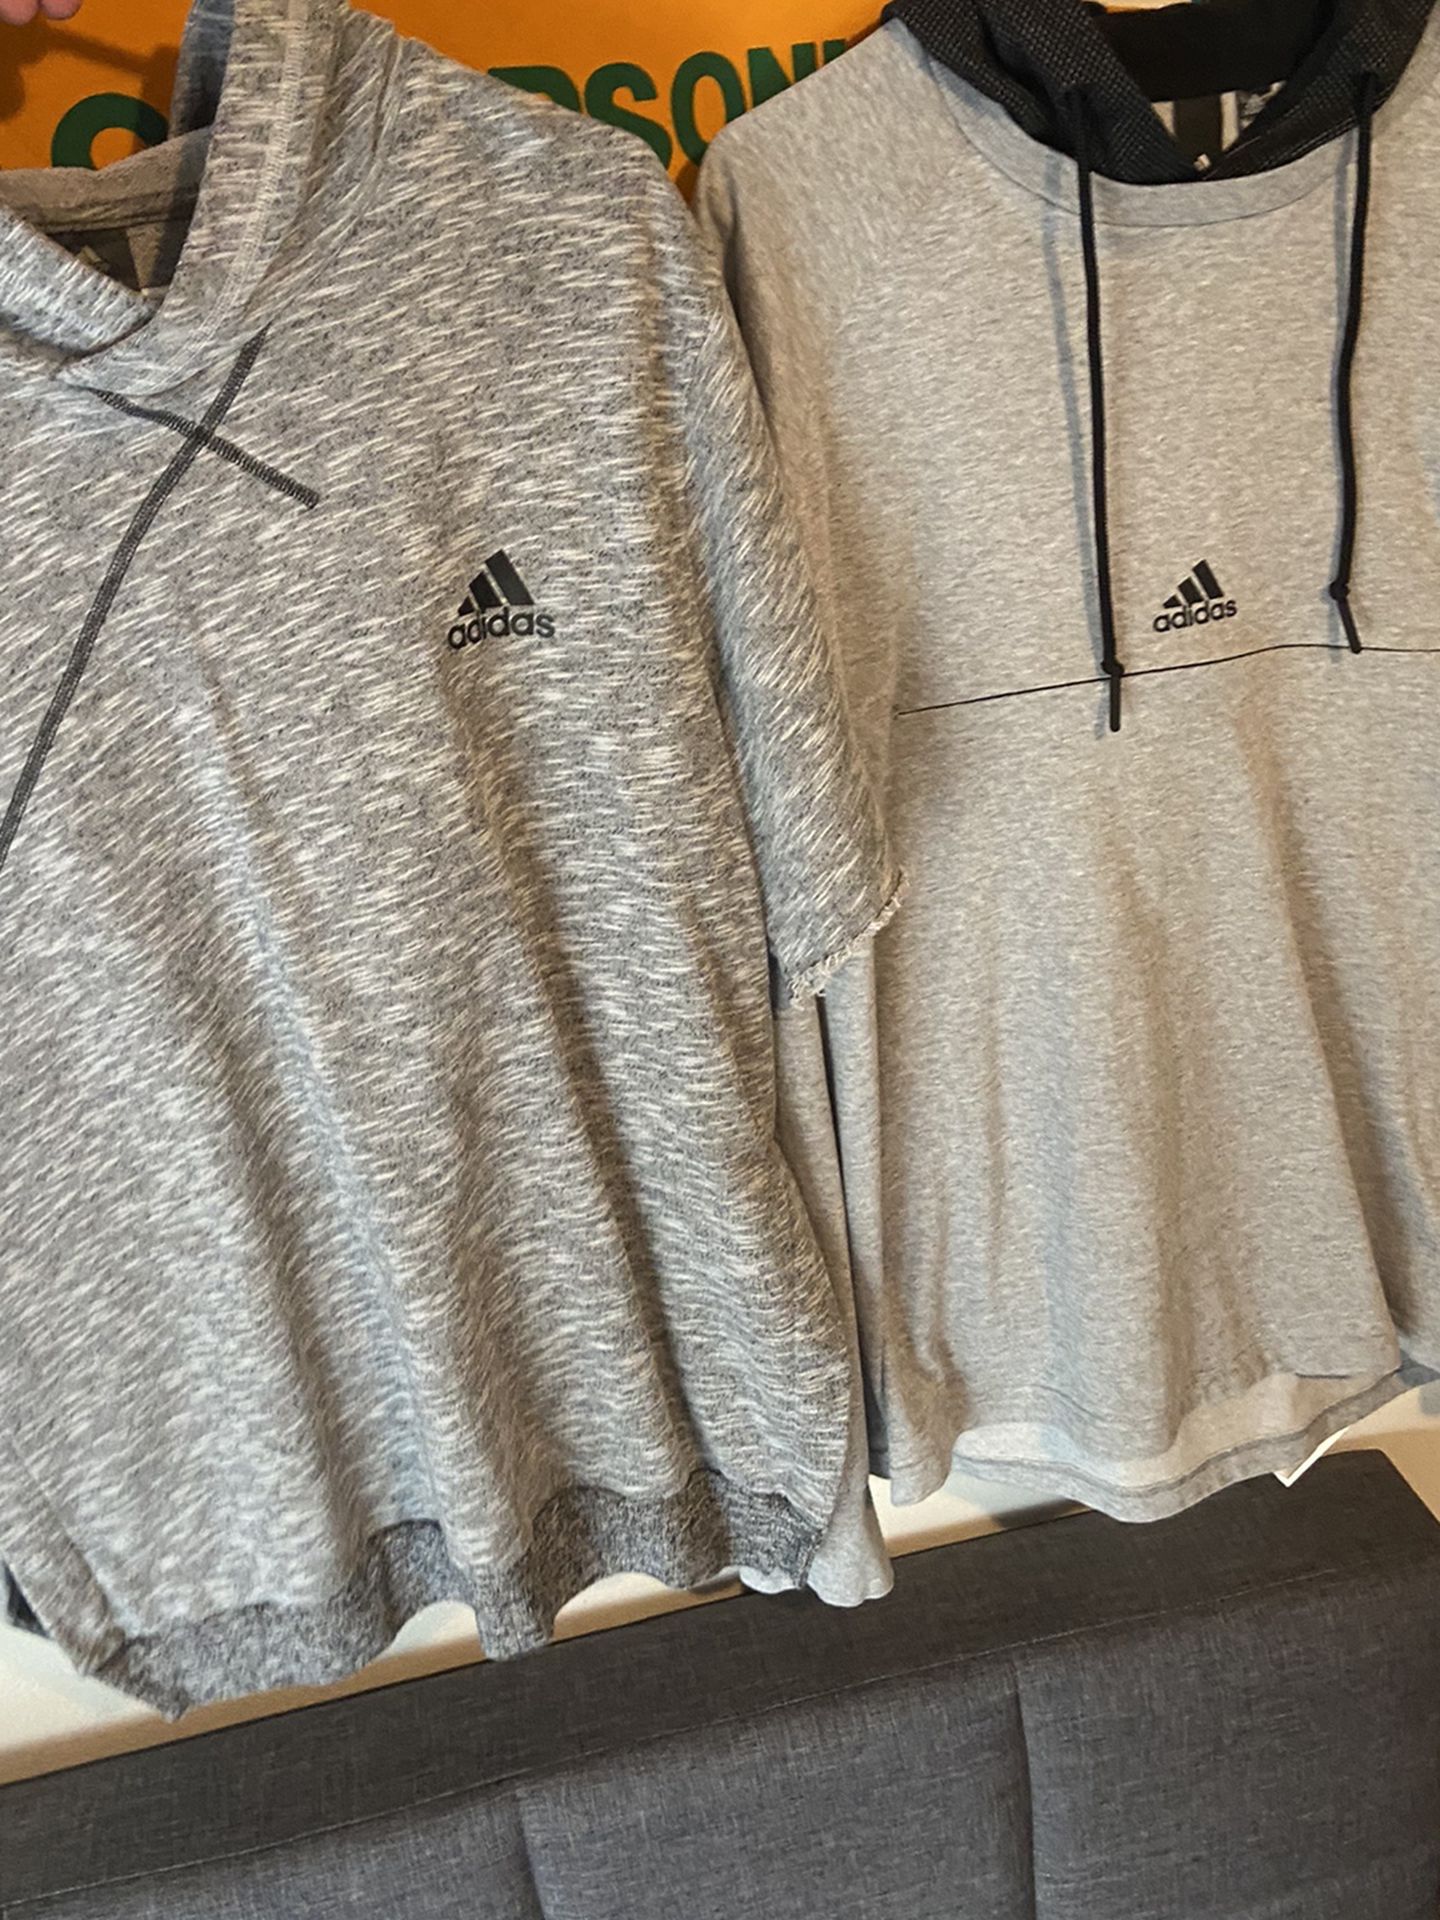 Adidas jacket/hoodies